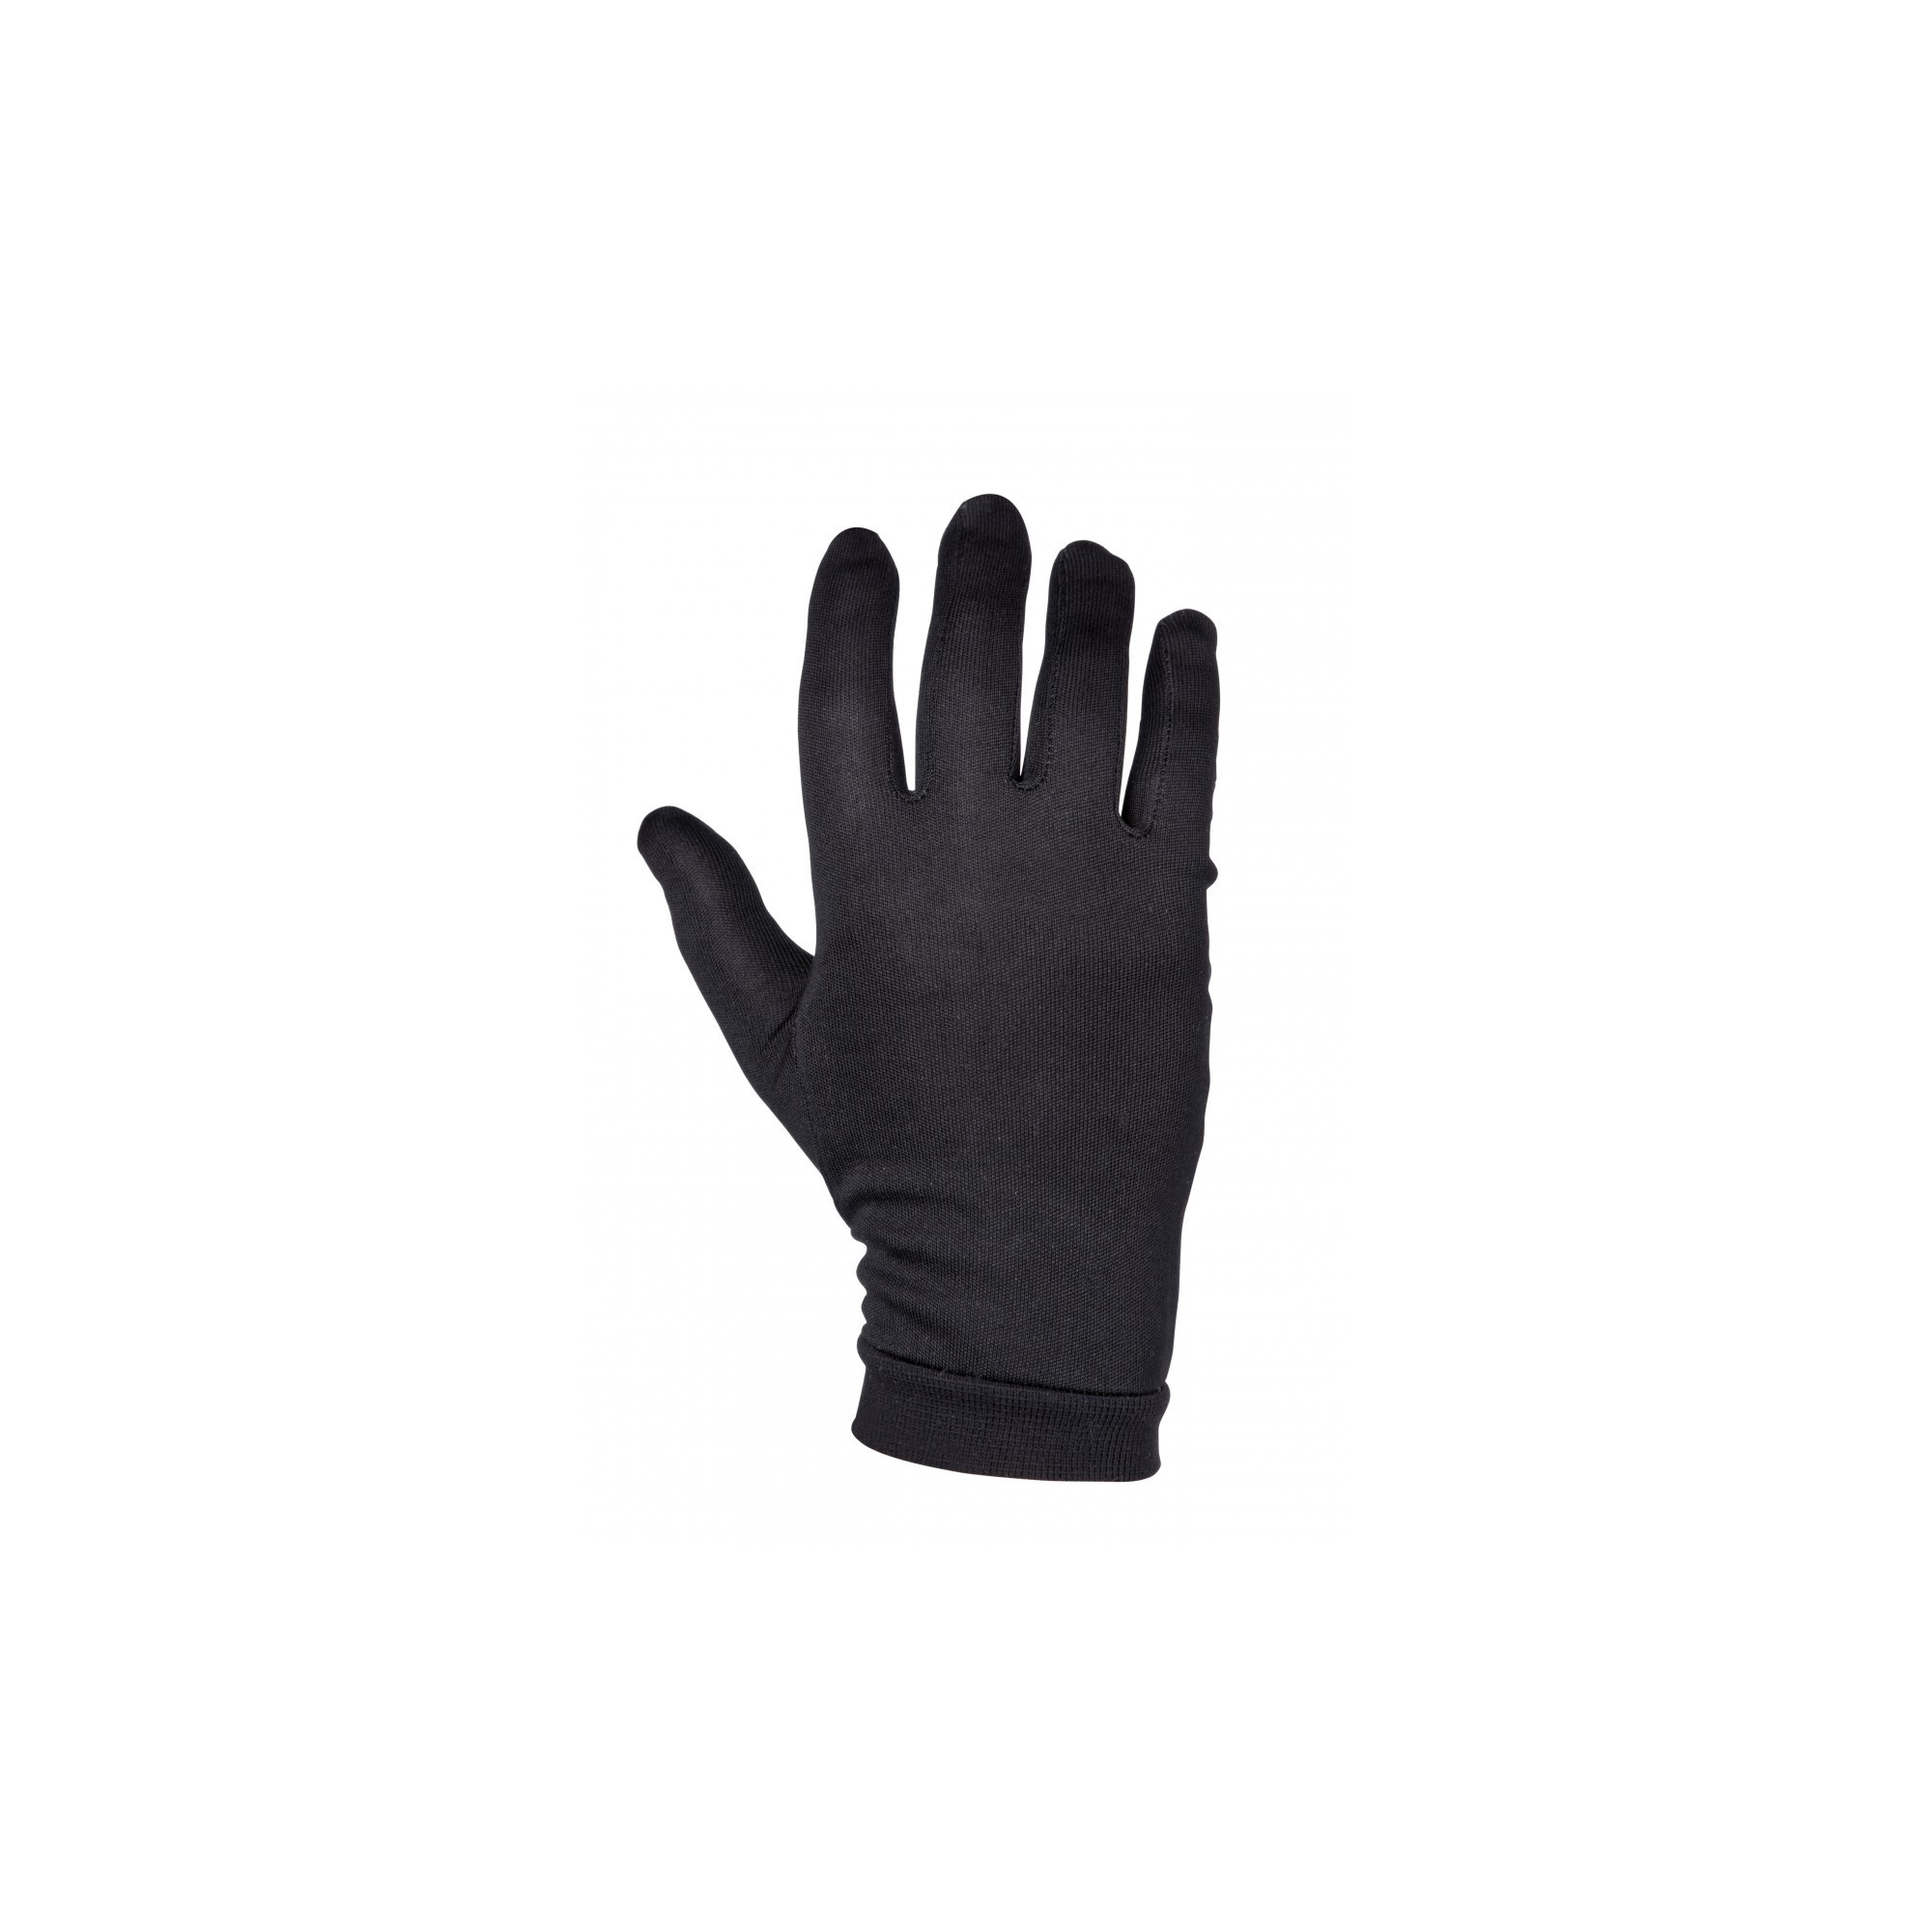 Sous gant en soie 100 % pour petites et grandes mains, spécial Hiver.